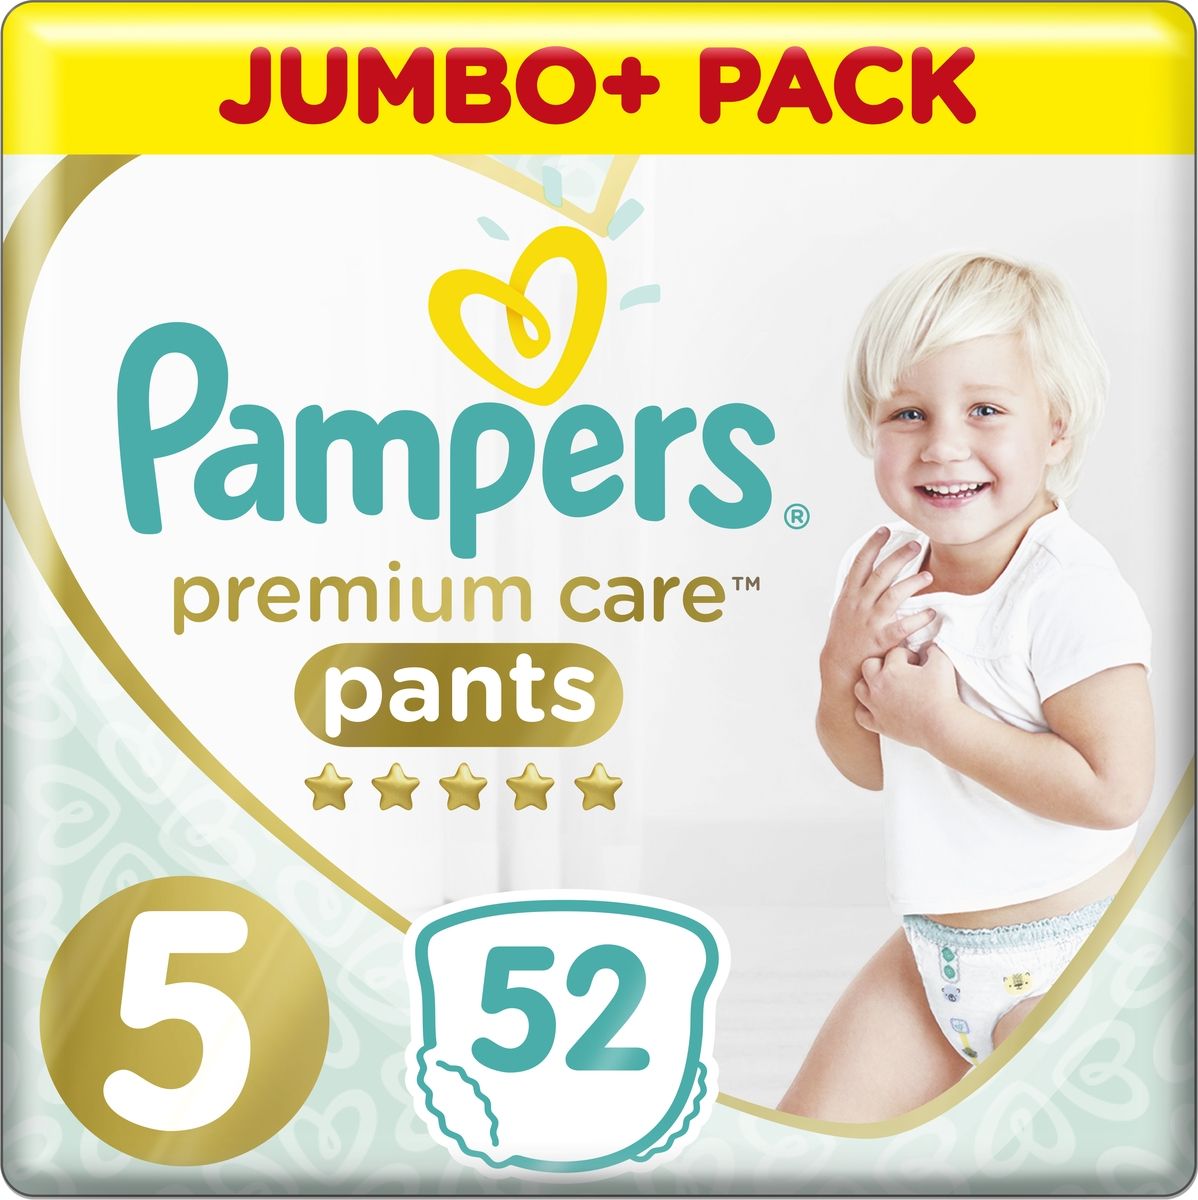  Pampers Premium Care, 12-17  ( 5), 52 